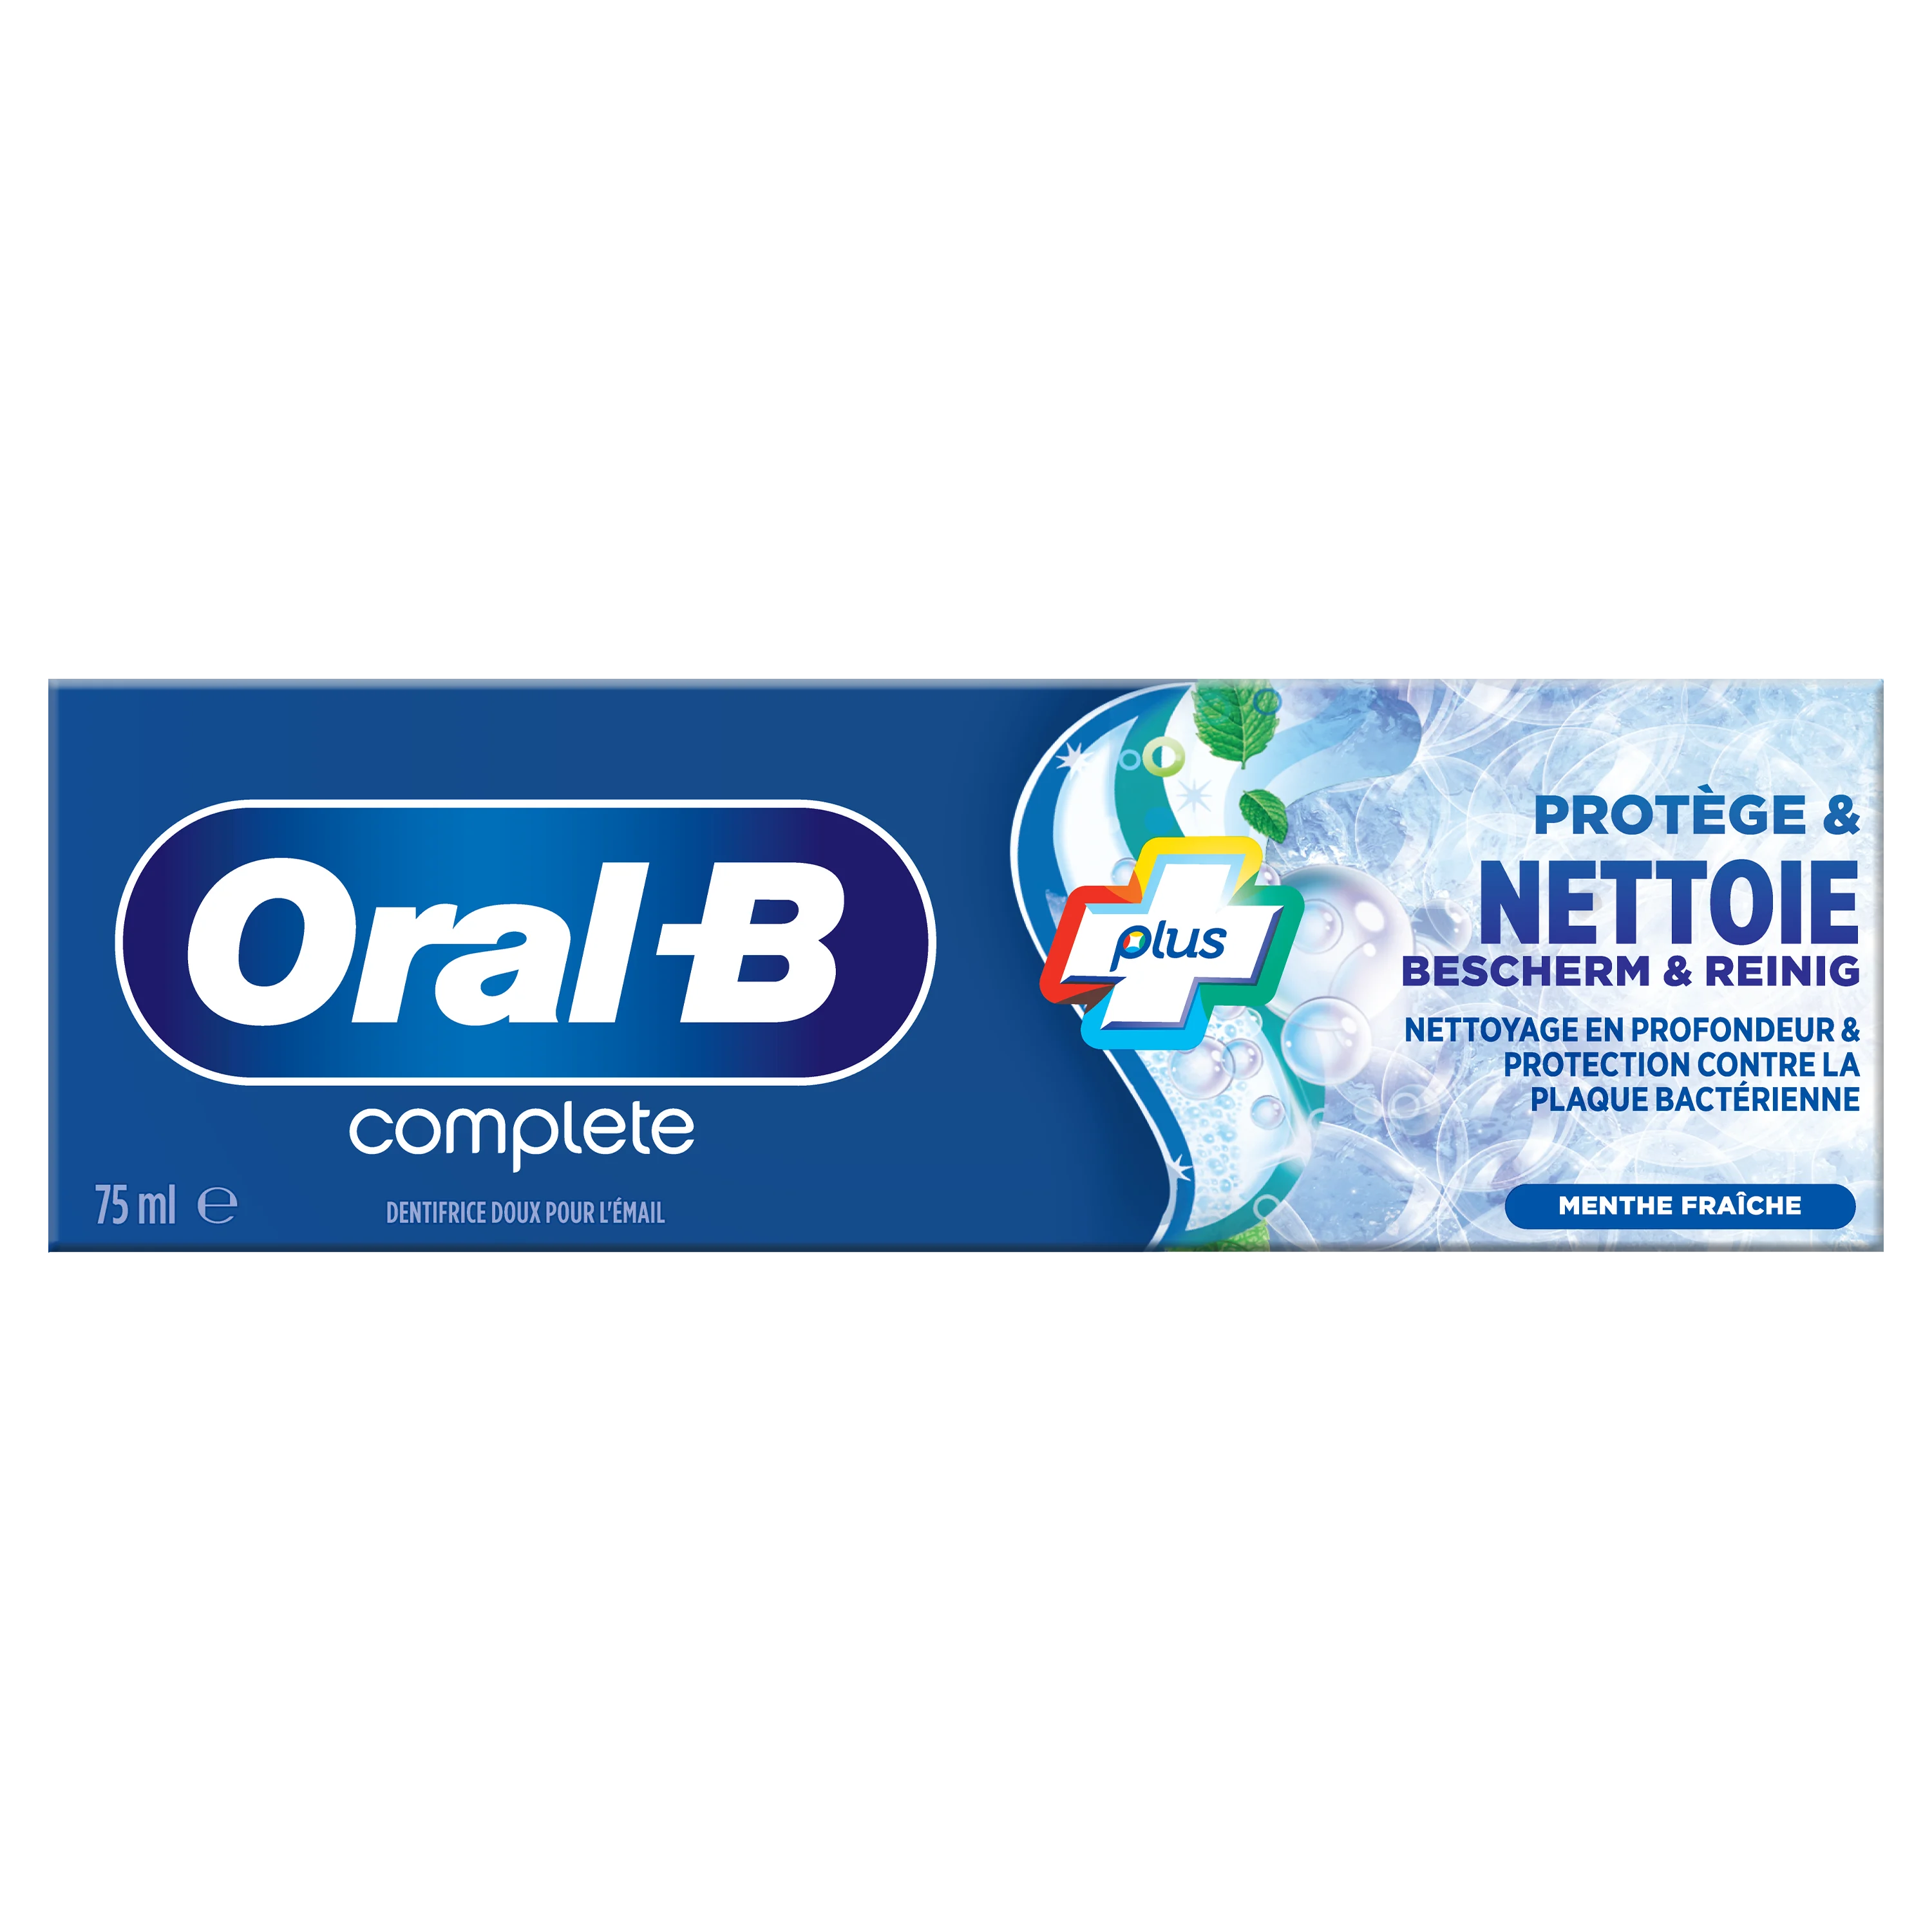 Oral-B Anti Tandsteen Tandpasta 75 ml 